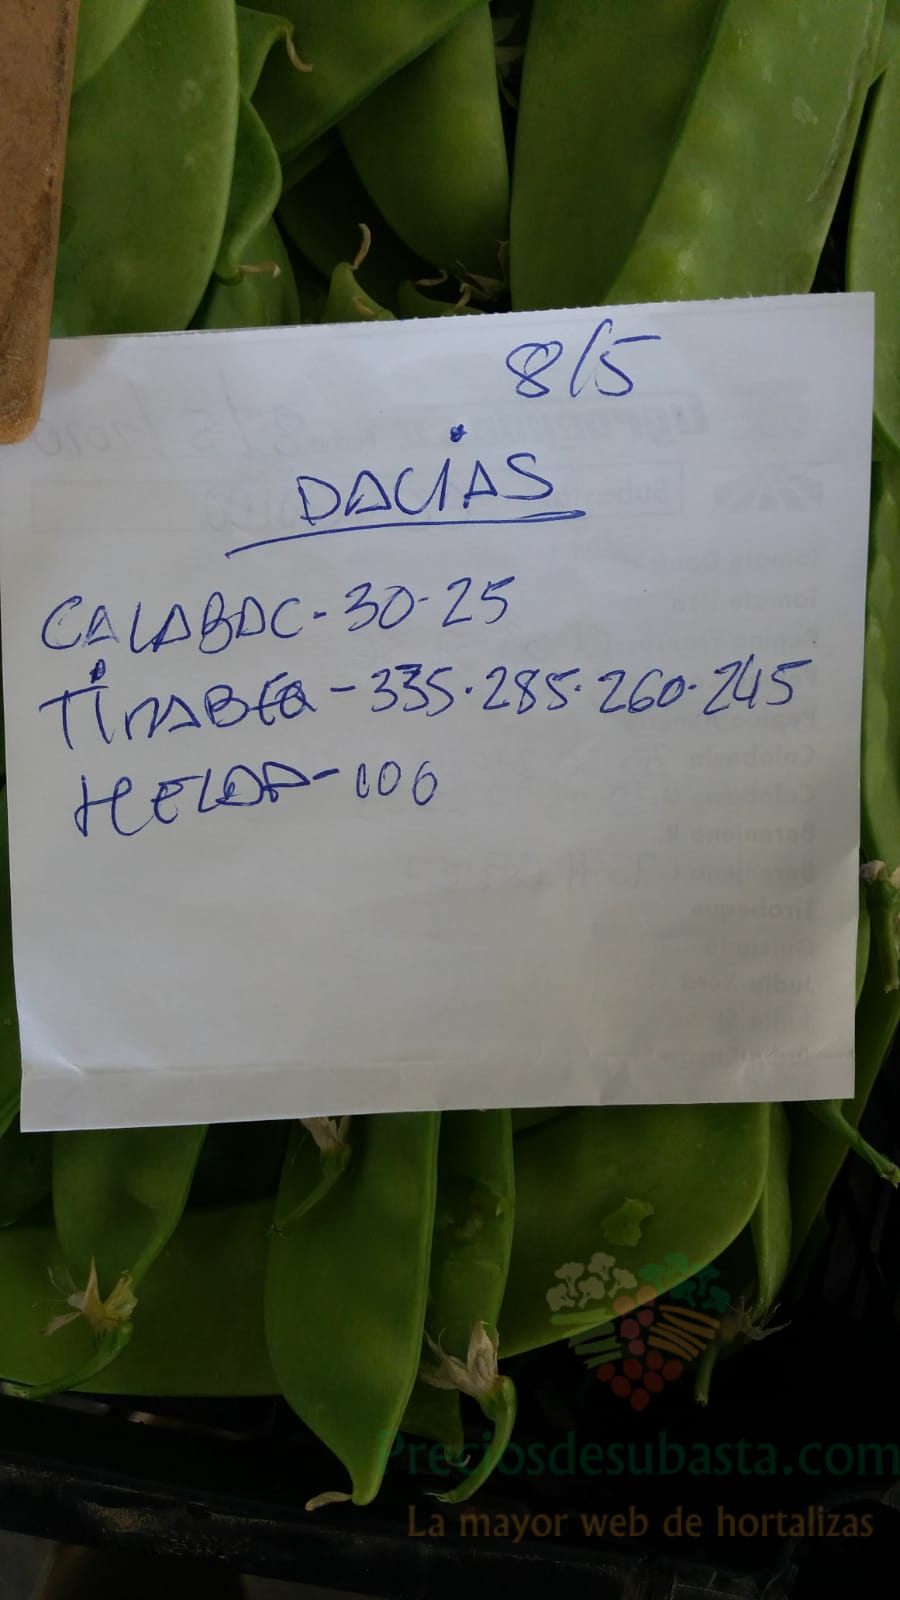 Subasta hortofrutícola AgroEjido Dalias 8 de mayo 2020